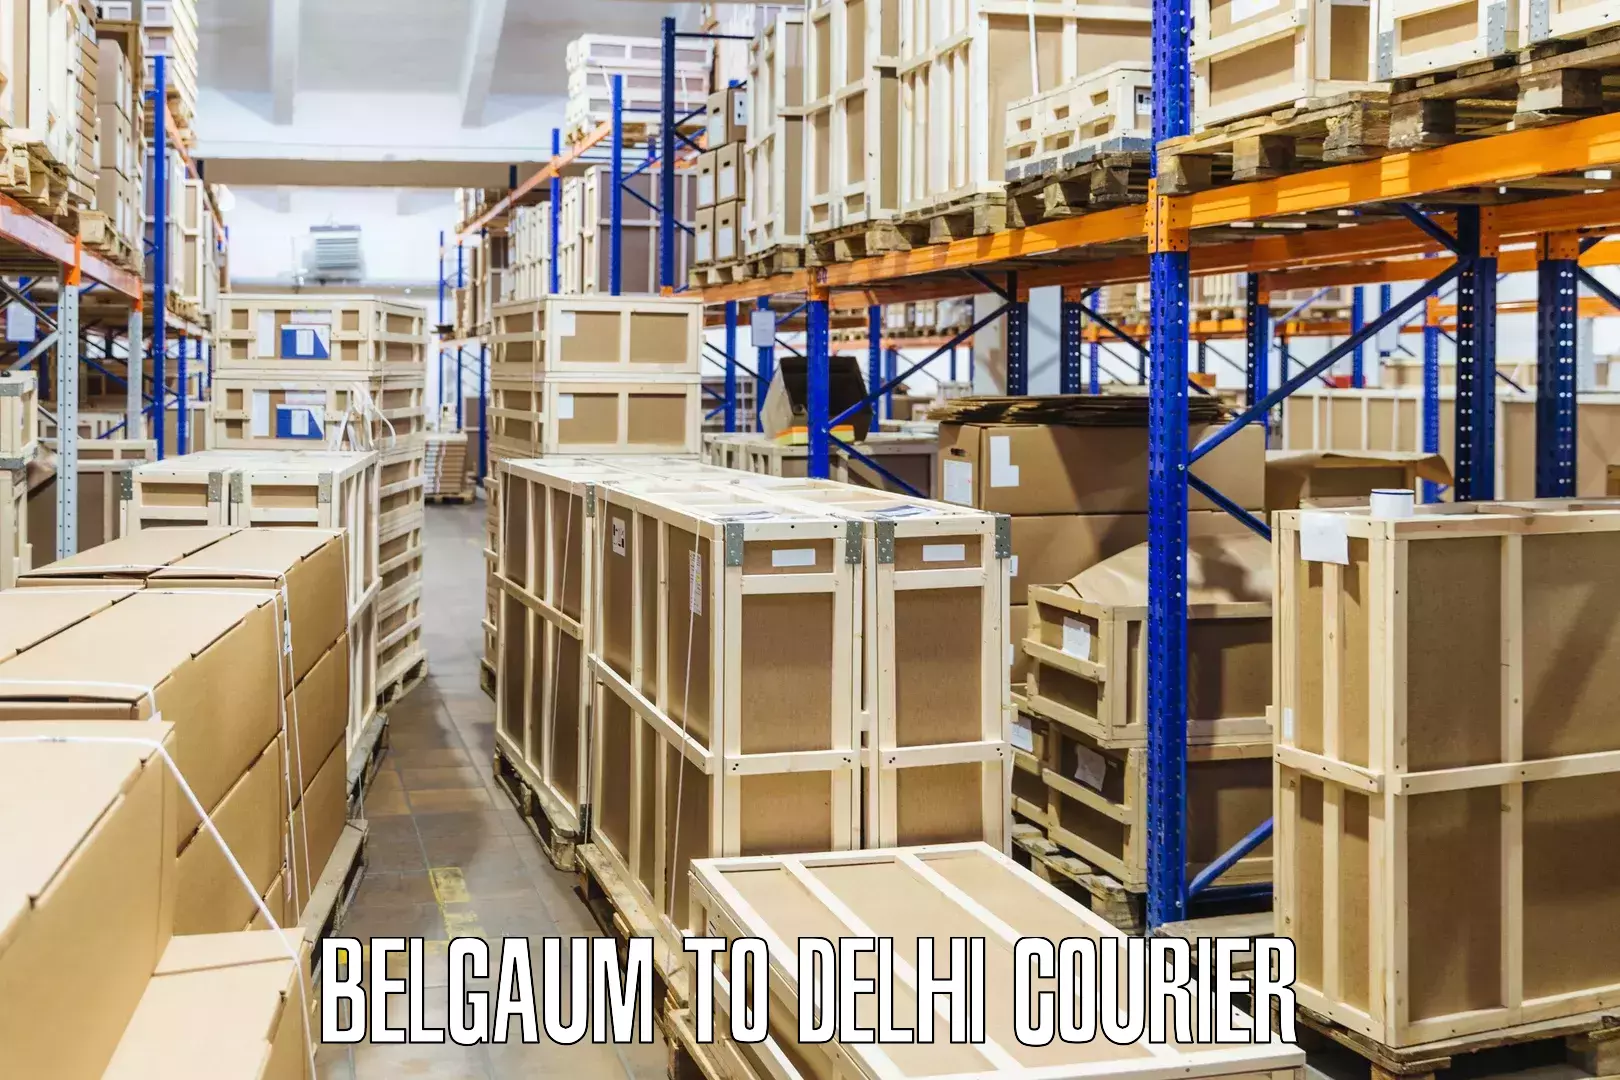 Premium courier services Belgaum to Lodhi Road